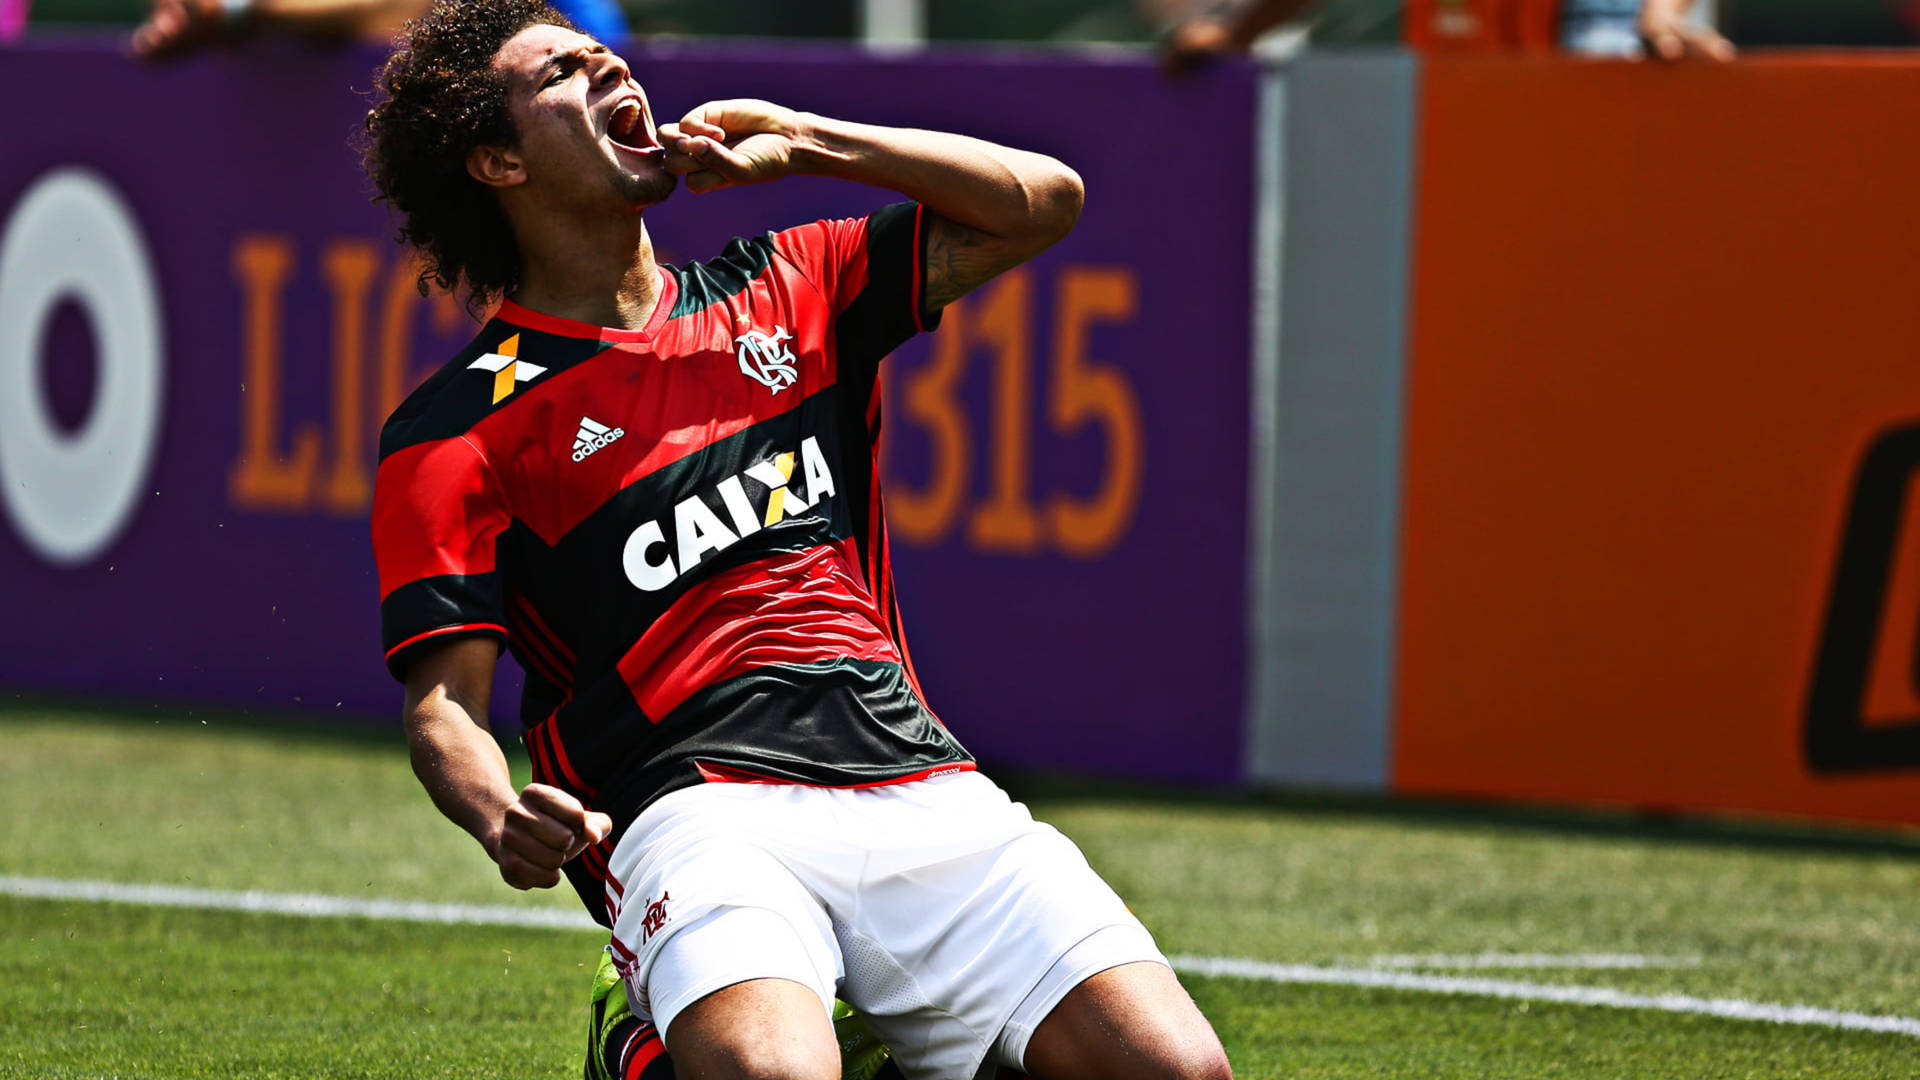 Flamengofc Willian Arao Se Traduce Al Español Como 